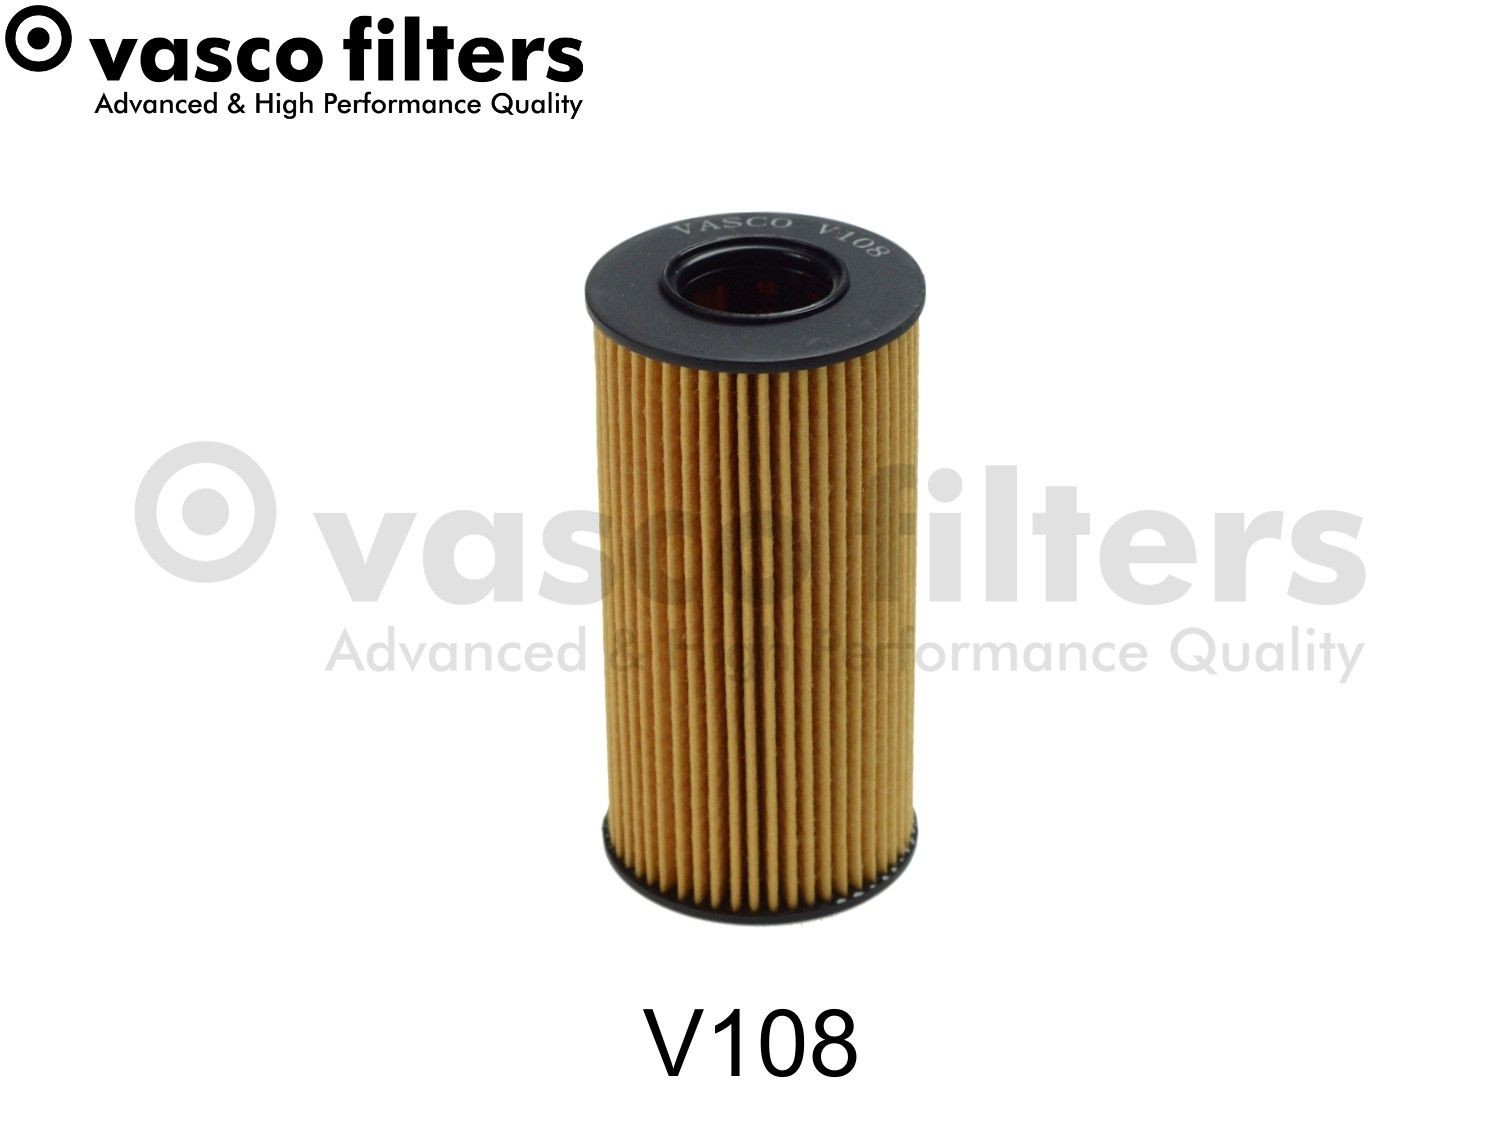 DAVID VASCO V108 Oil filter A608 184 01 00